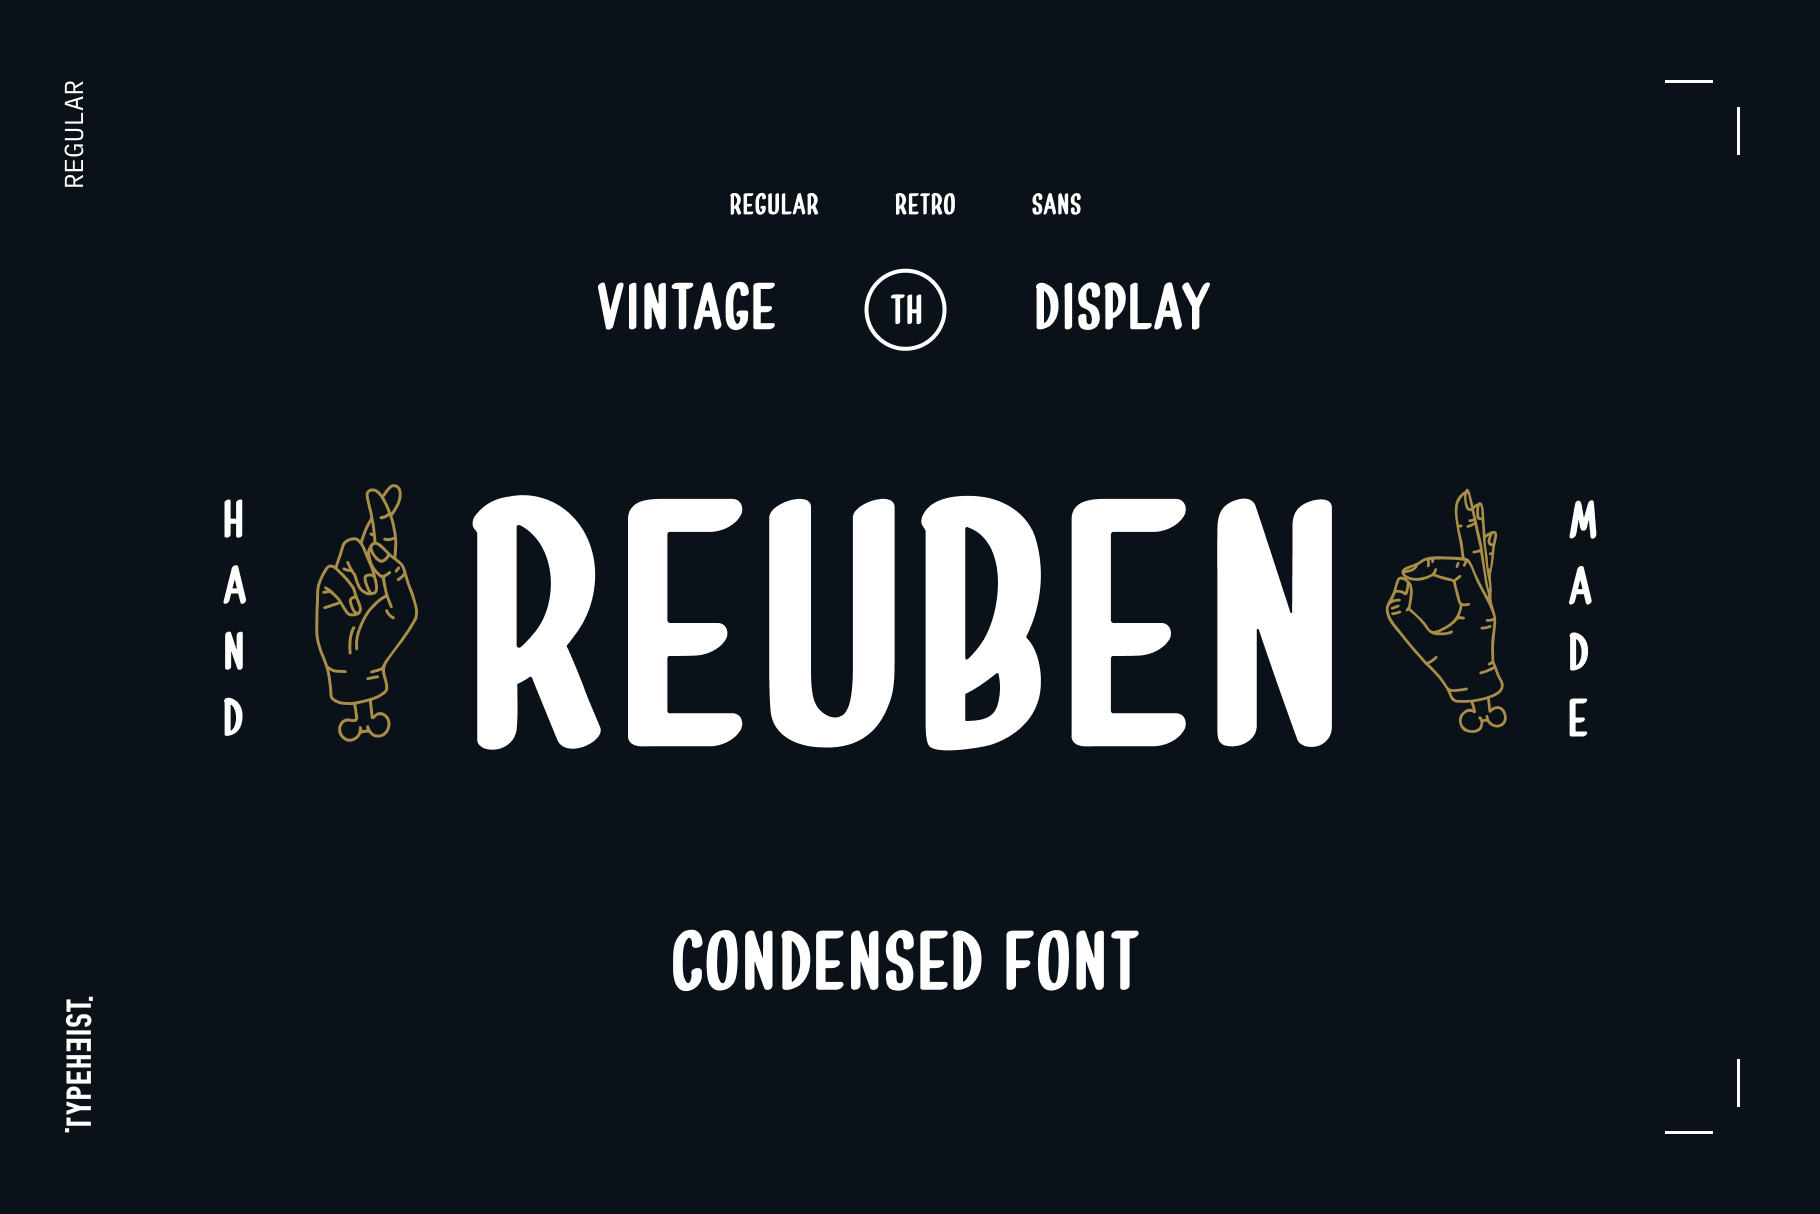 Reuben: A hand-lettered, vintage condensed font